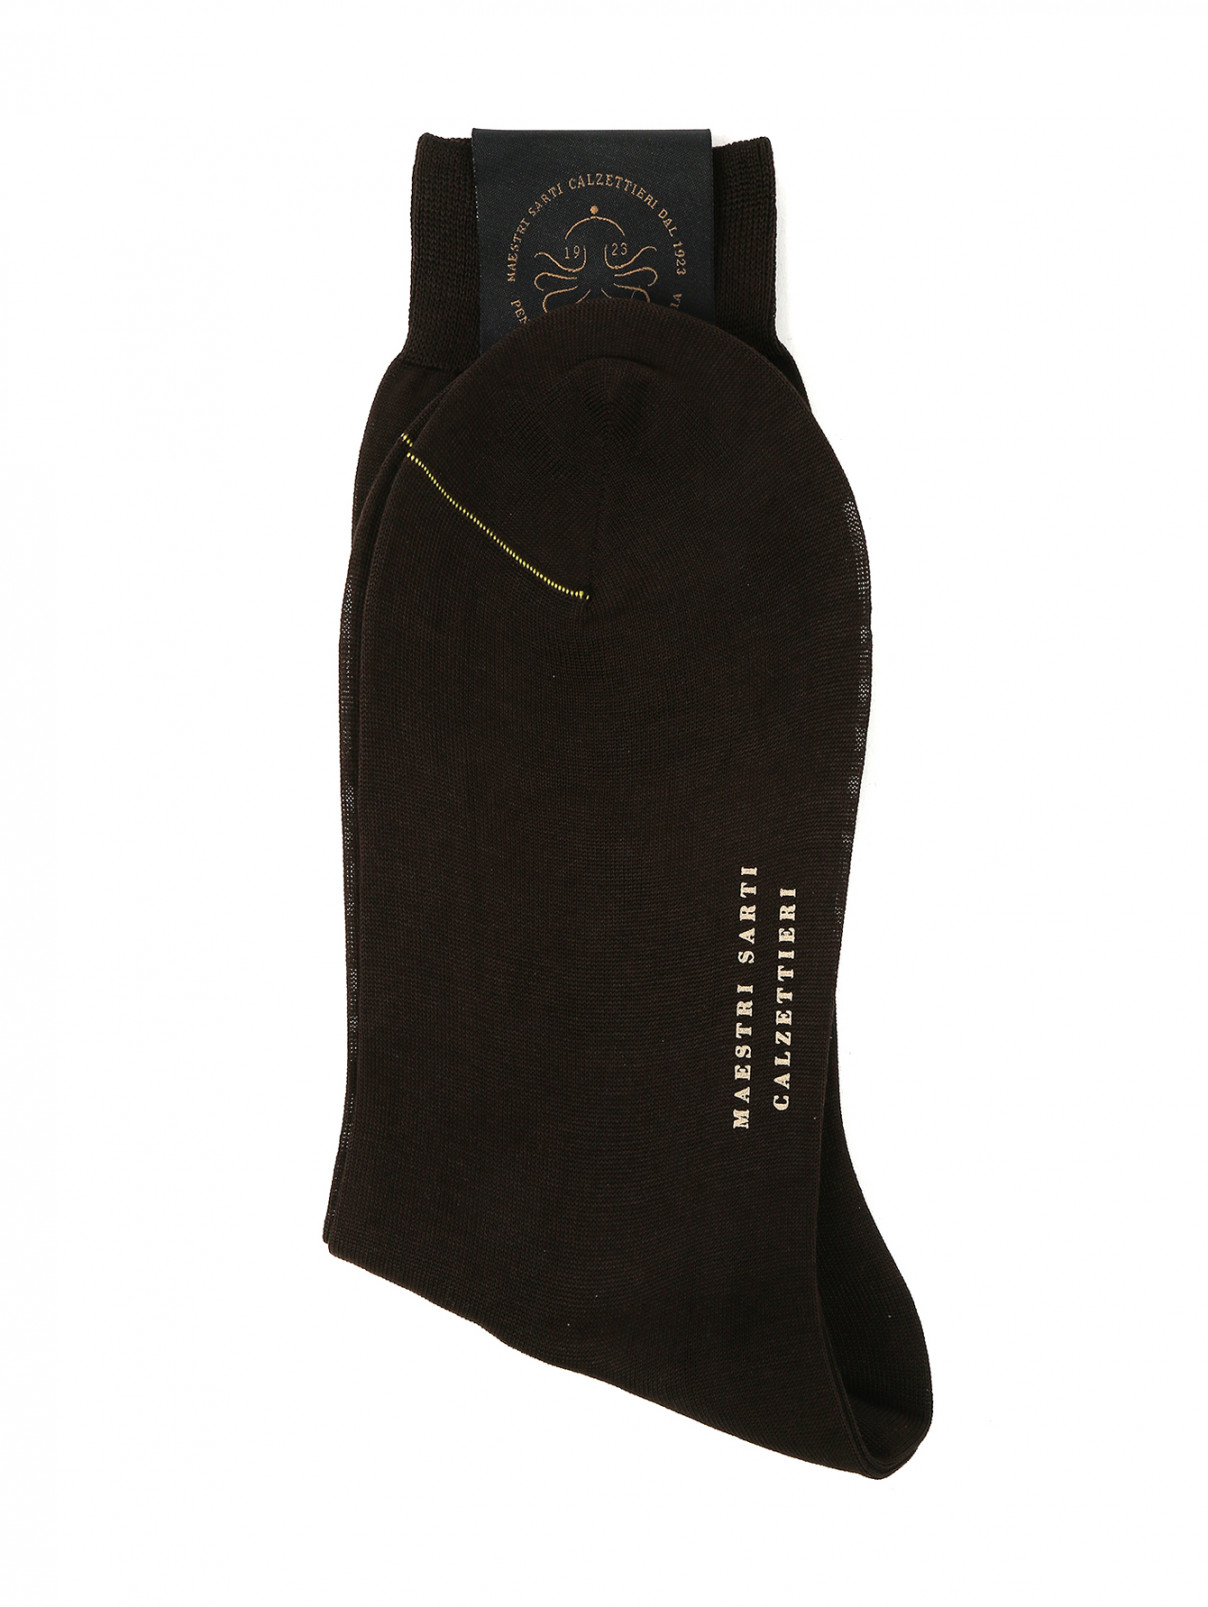 Носки из хлопка Peekaboo  –  Общий вид  – Цвет:  Коричневый